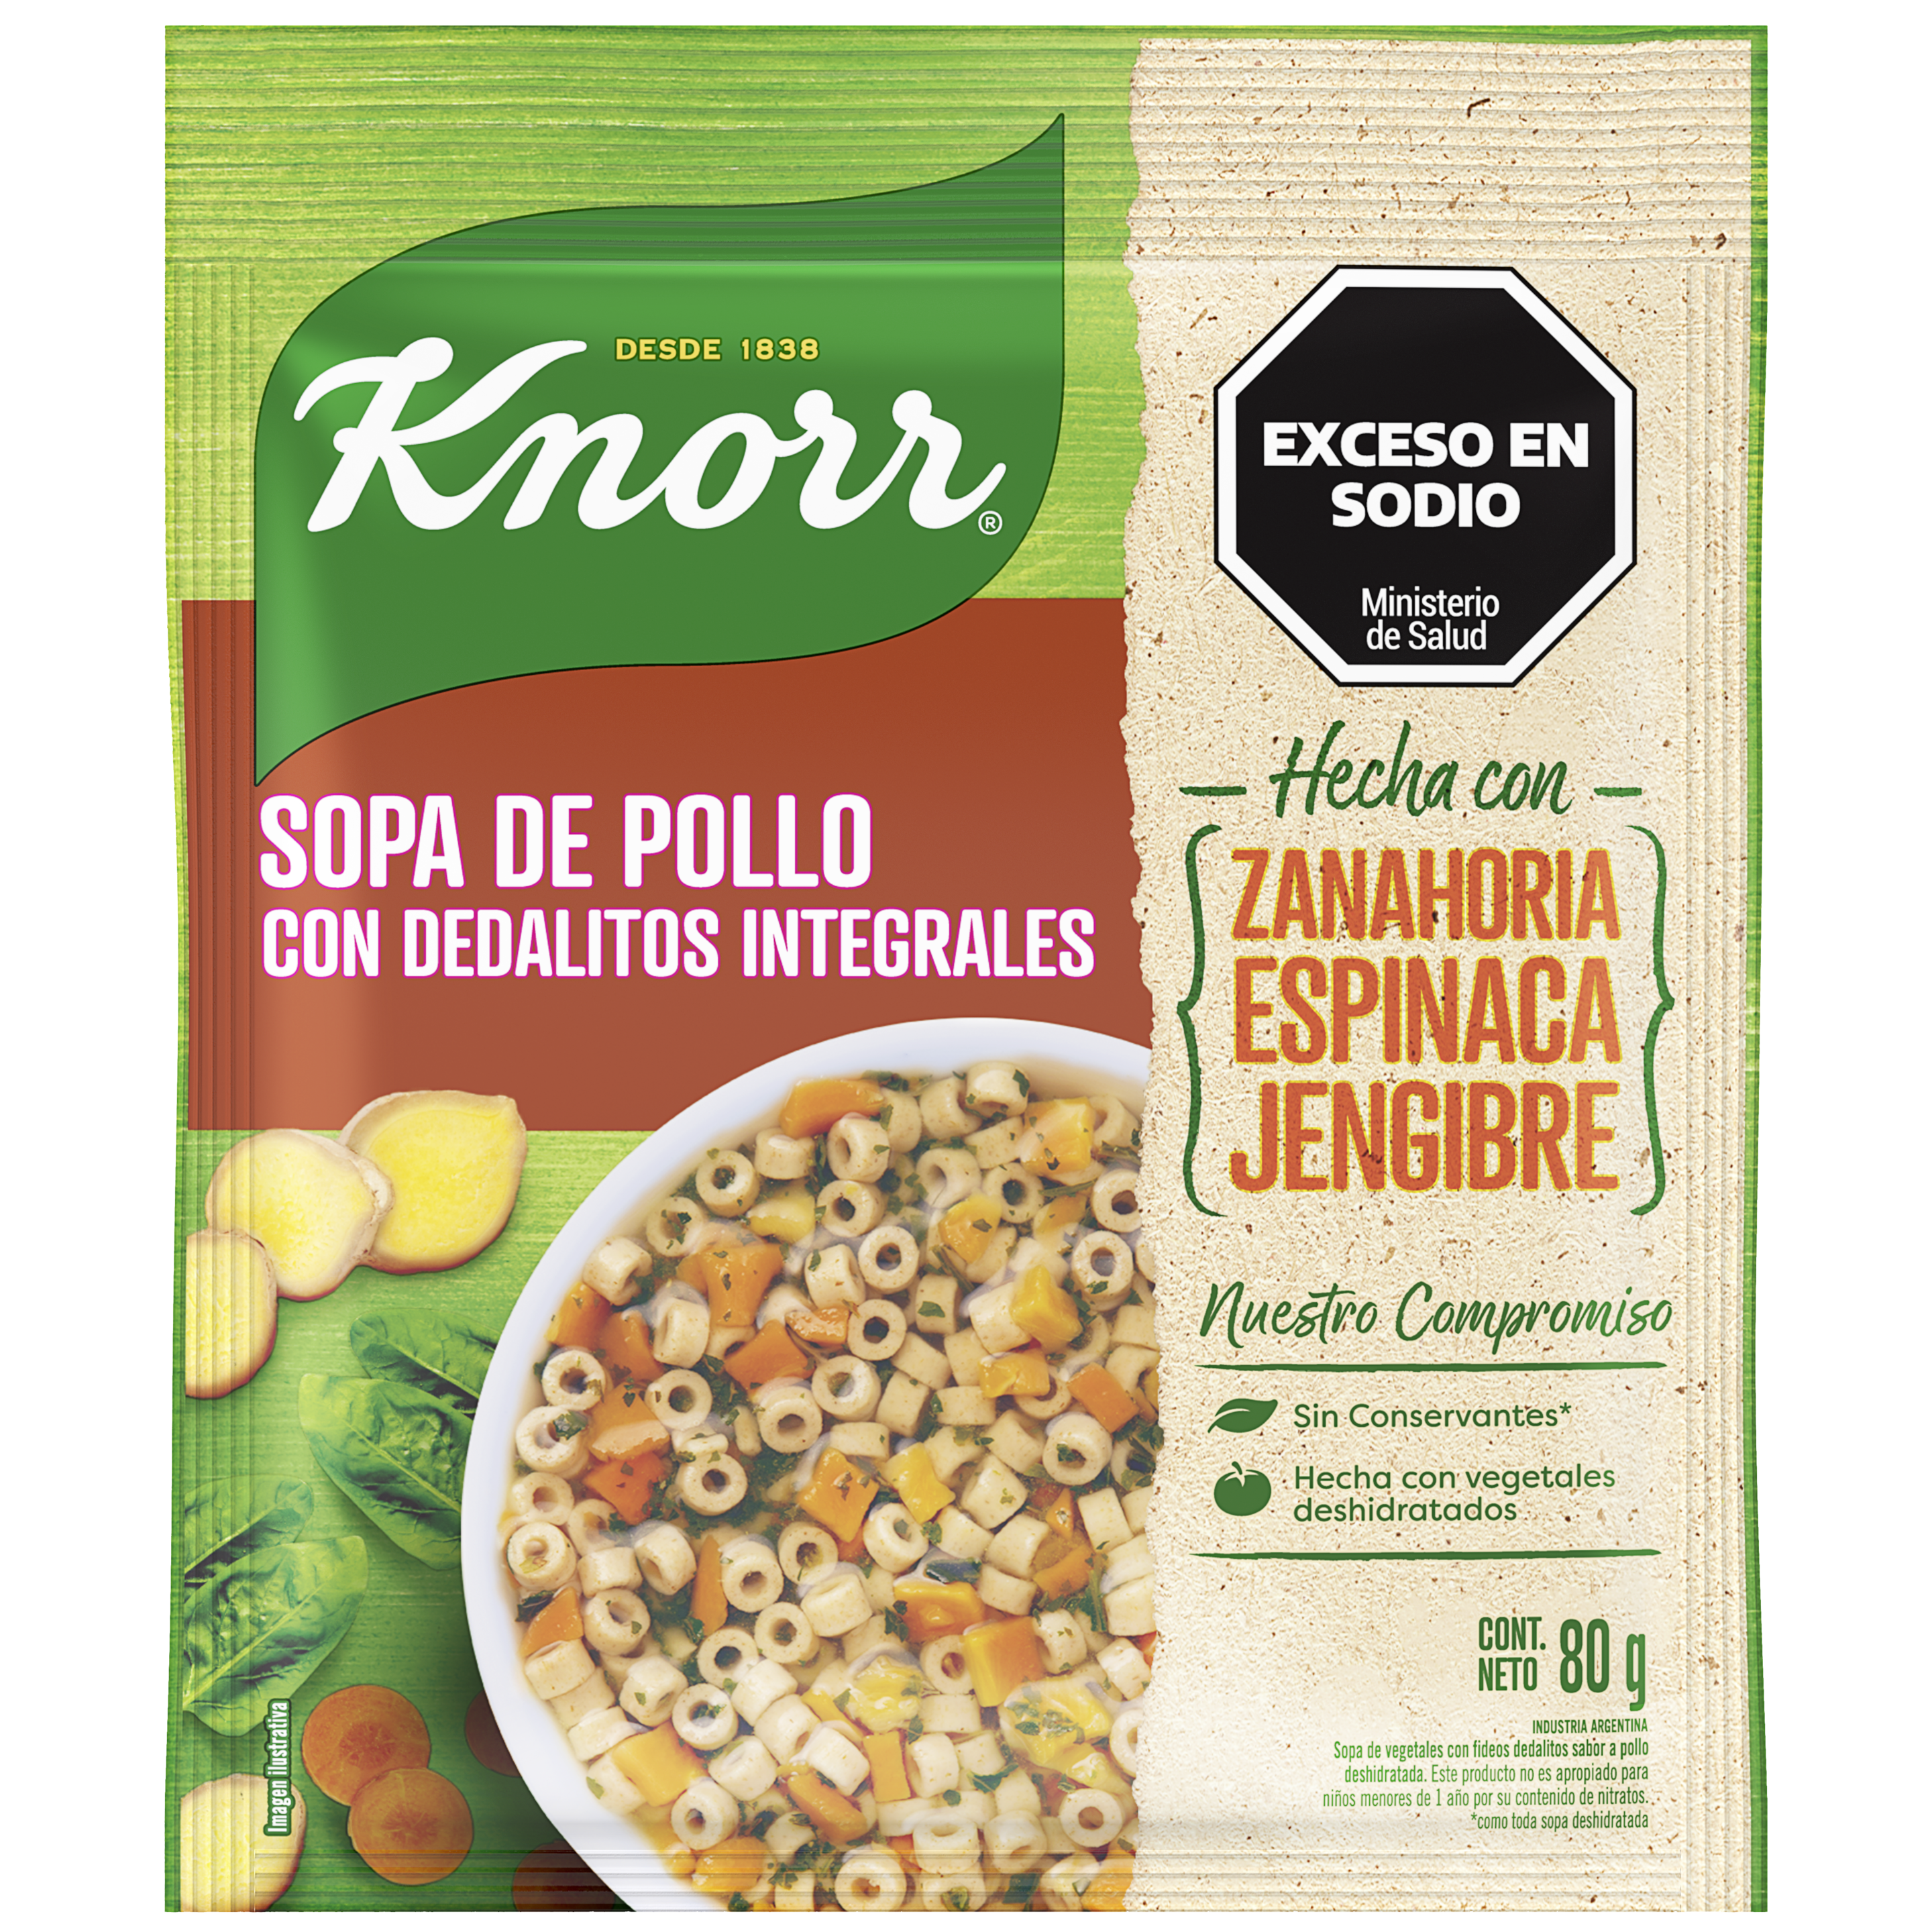 Imagen de envase Sopa Pollo con Dedalitos Integrales Knorr